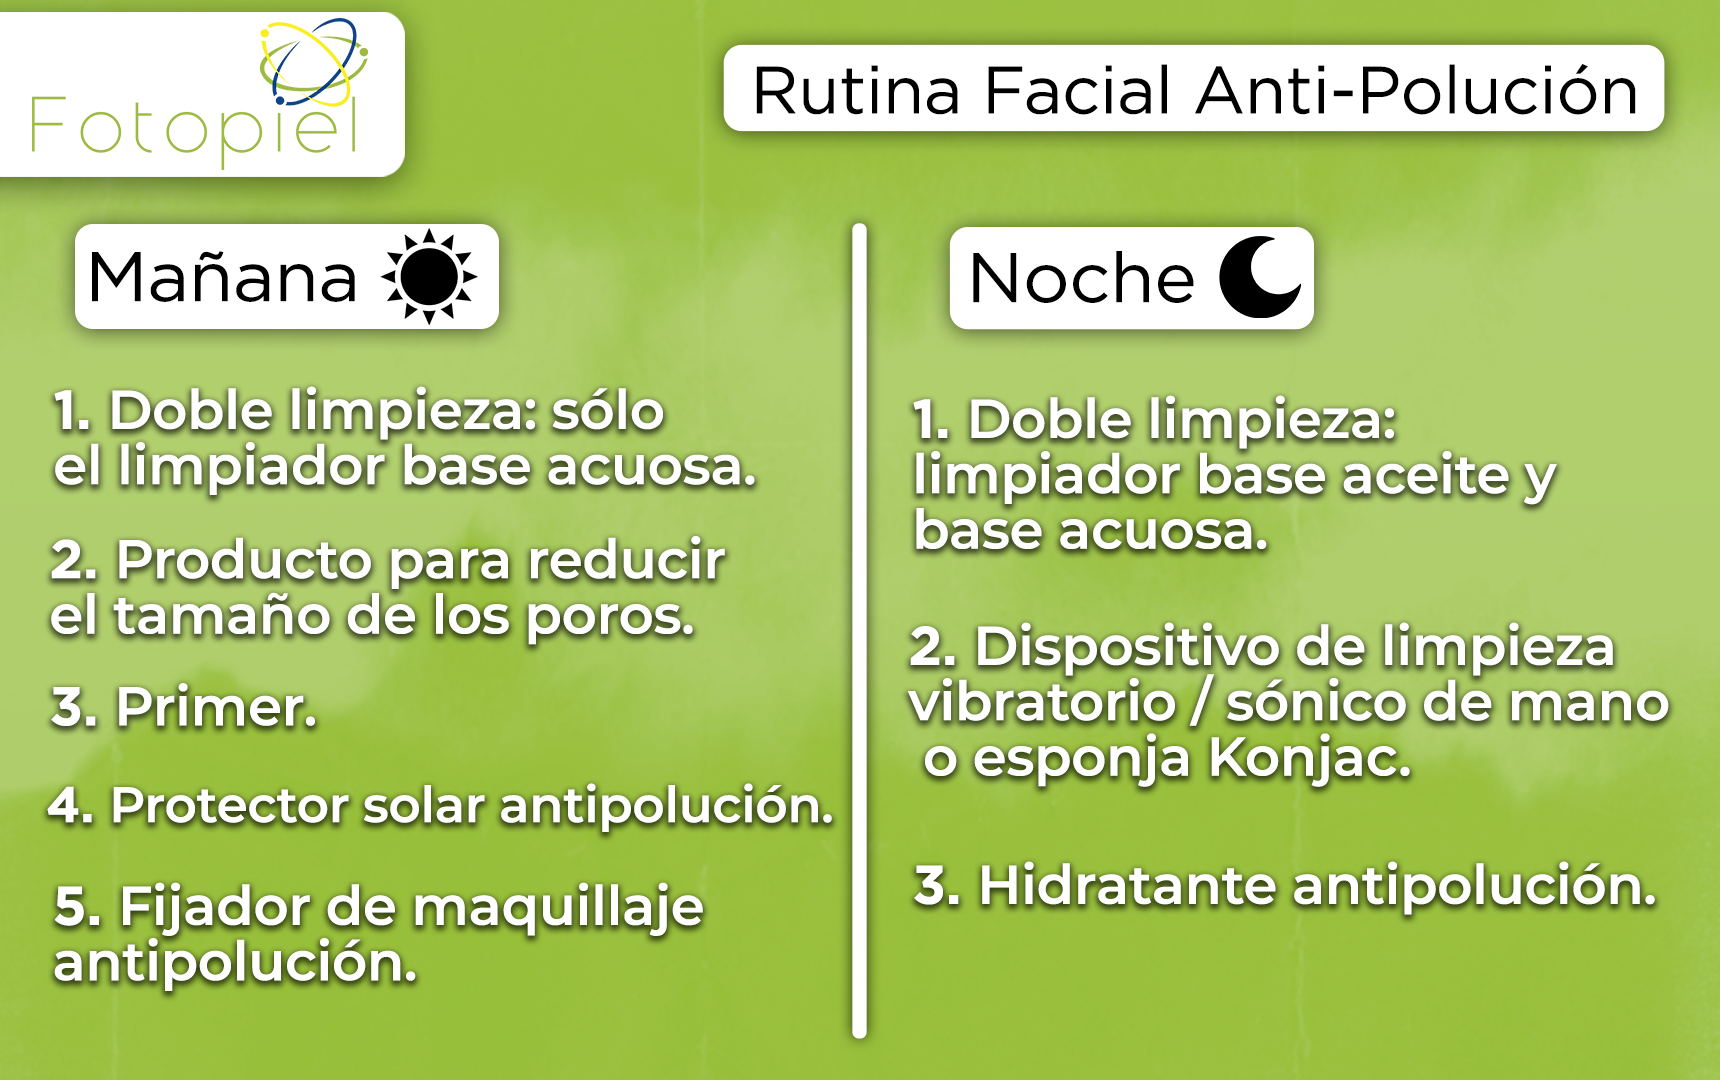 Rutina facial anti-polución